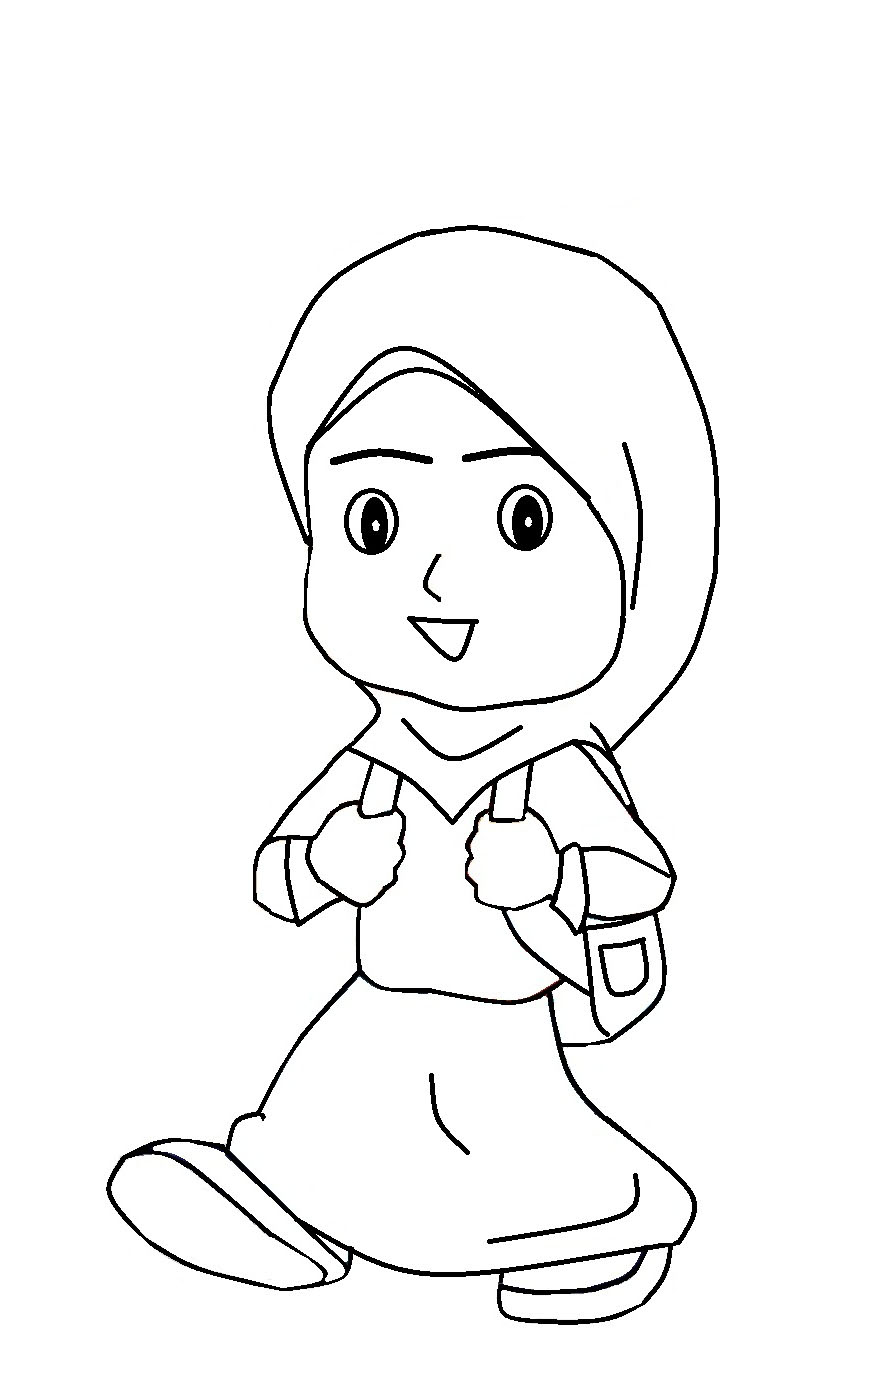  Gambar  Kartun Anak  Muslim Belajar Medsos Kini